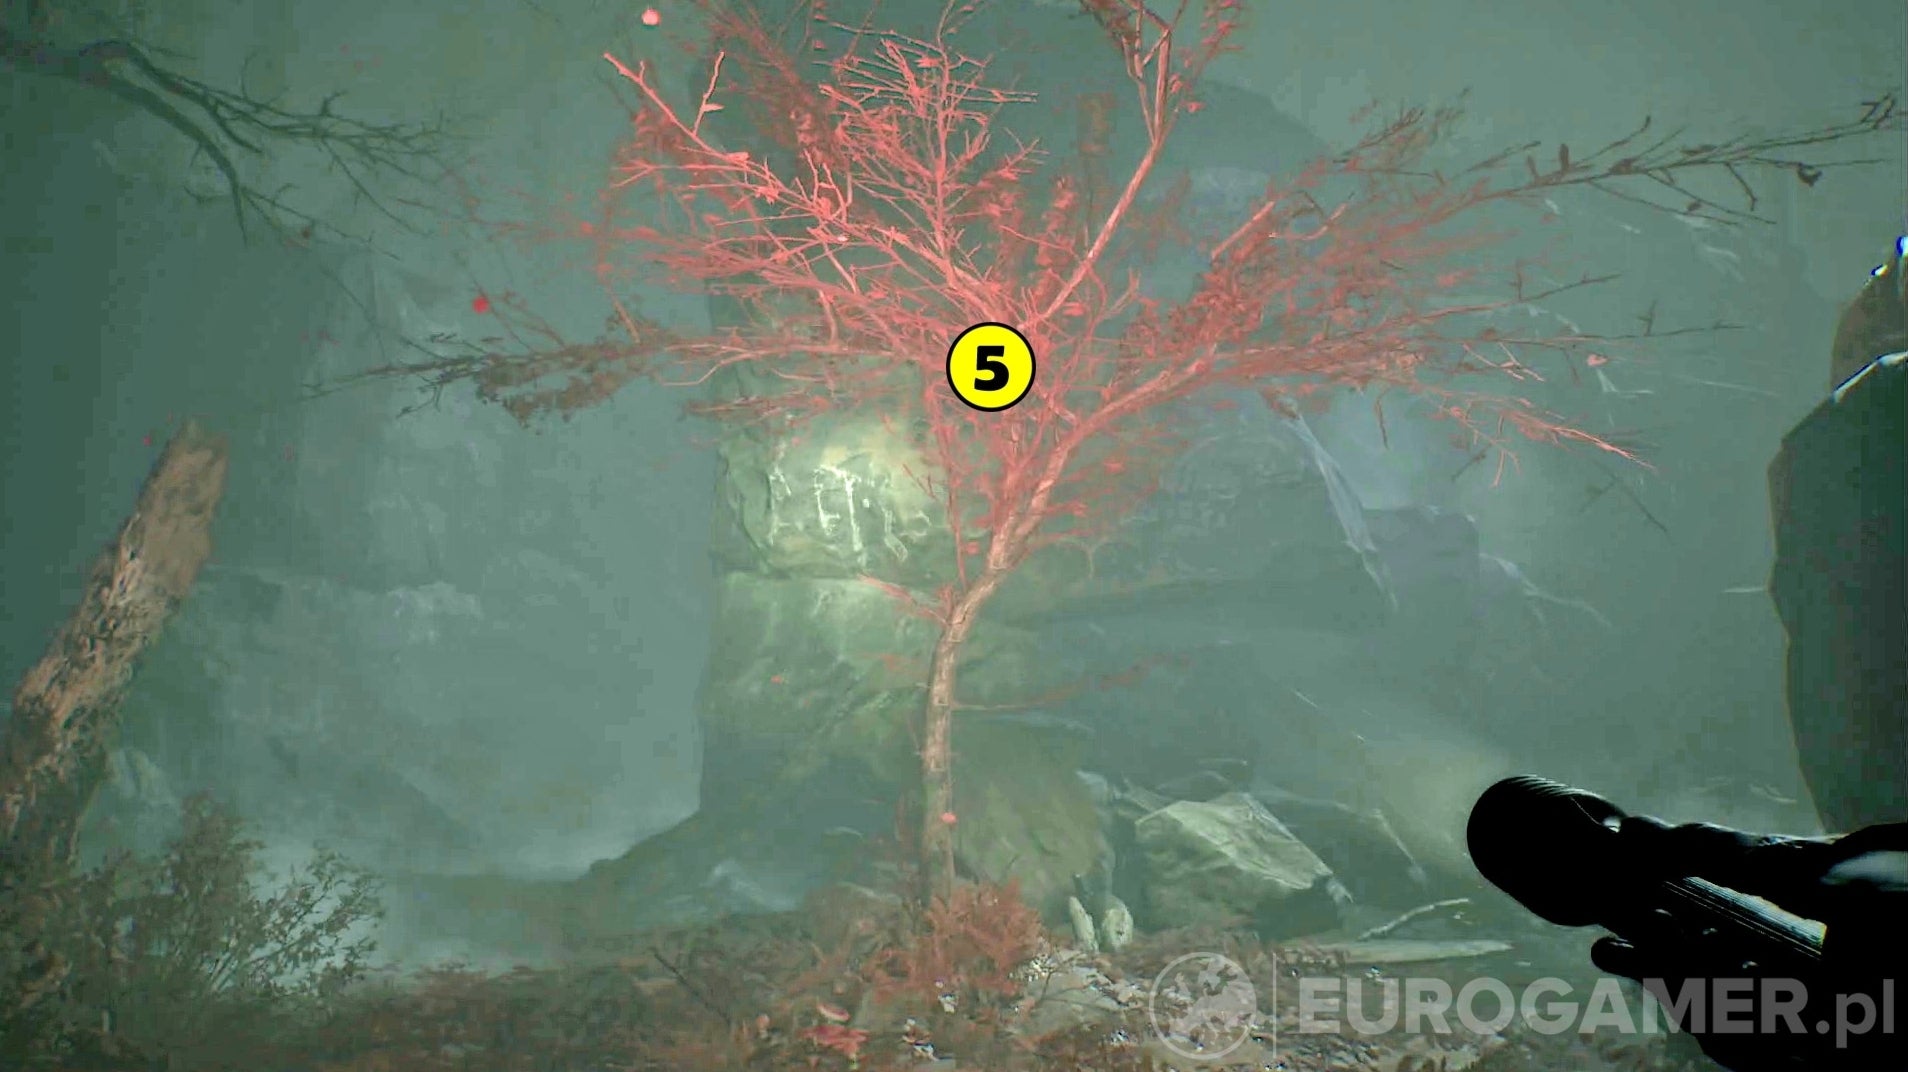 Obrazki dla Blair Witch - Rozdział 14: poszukiwanie psa, czerwone drzewo